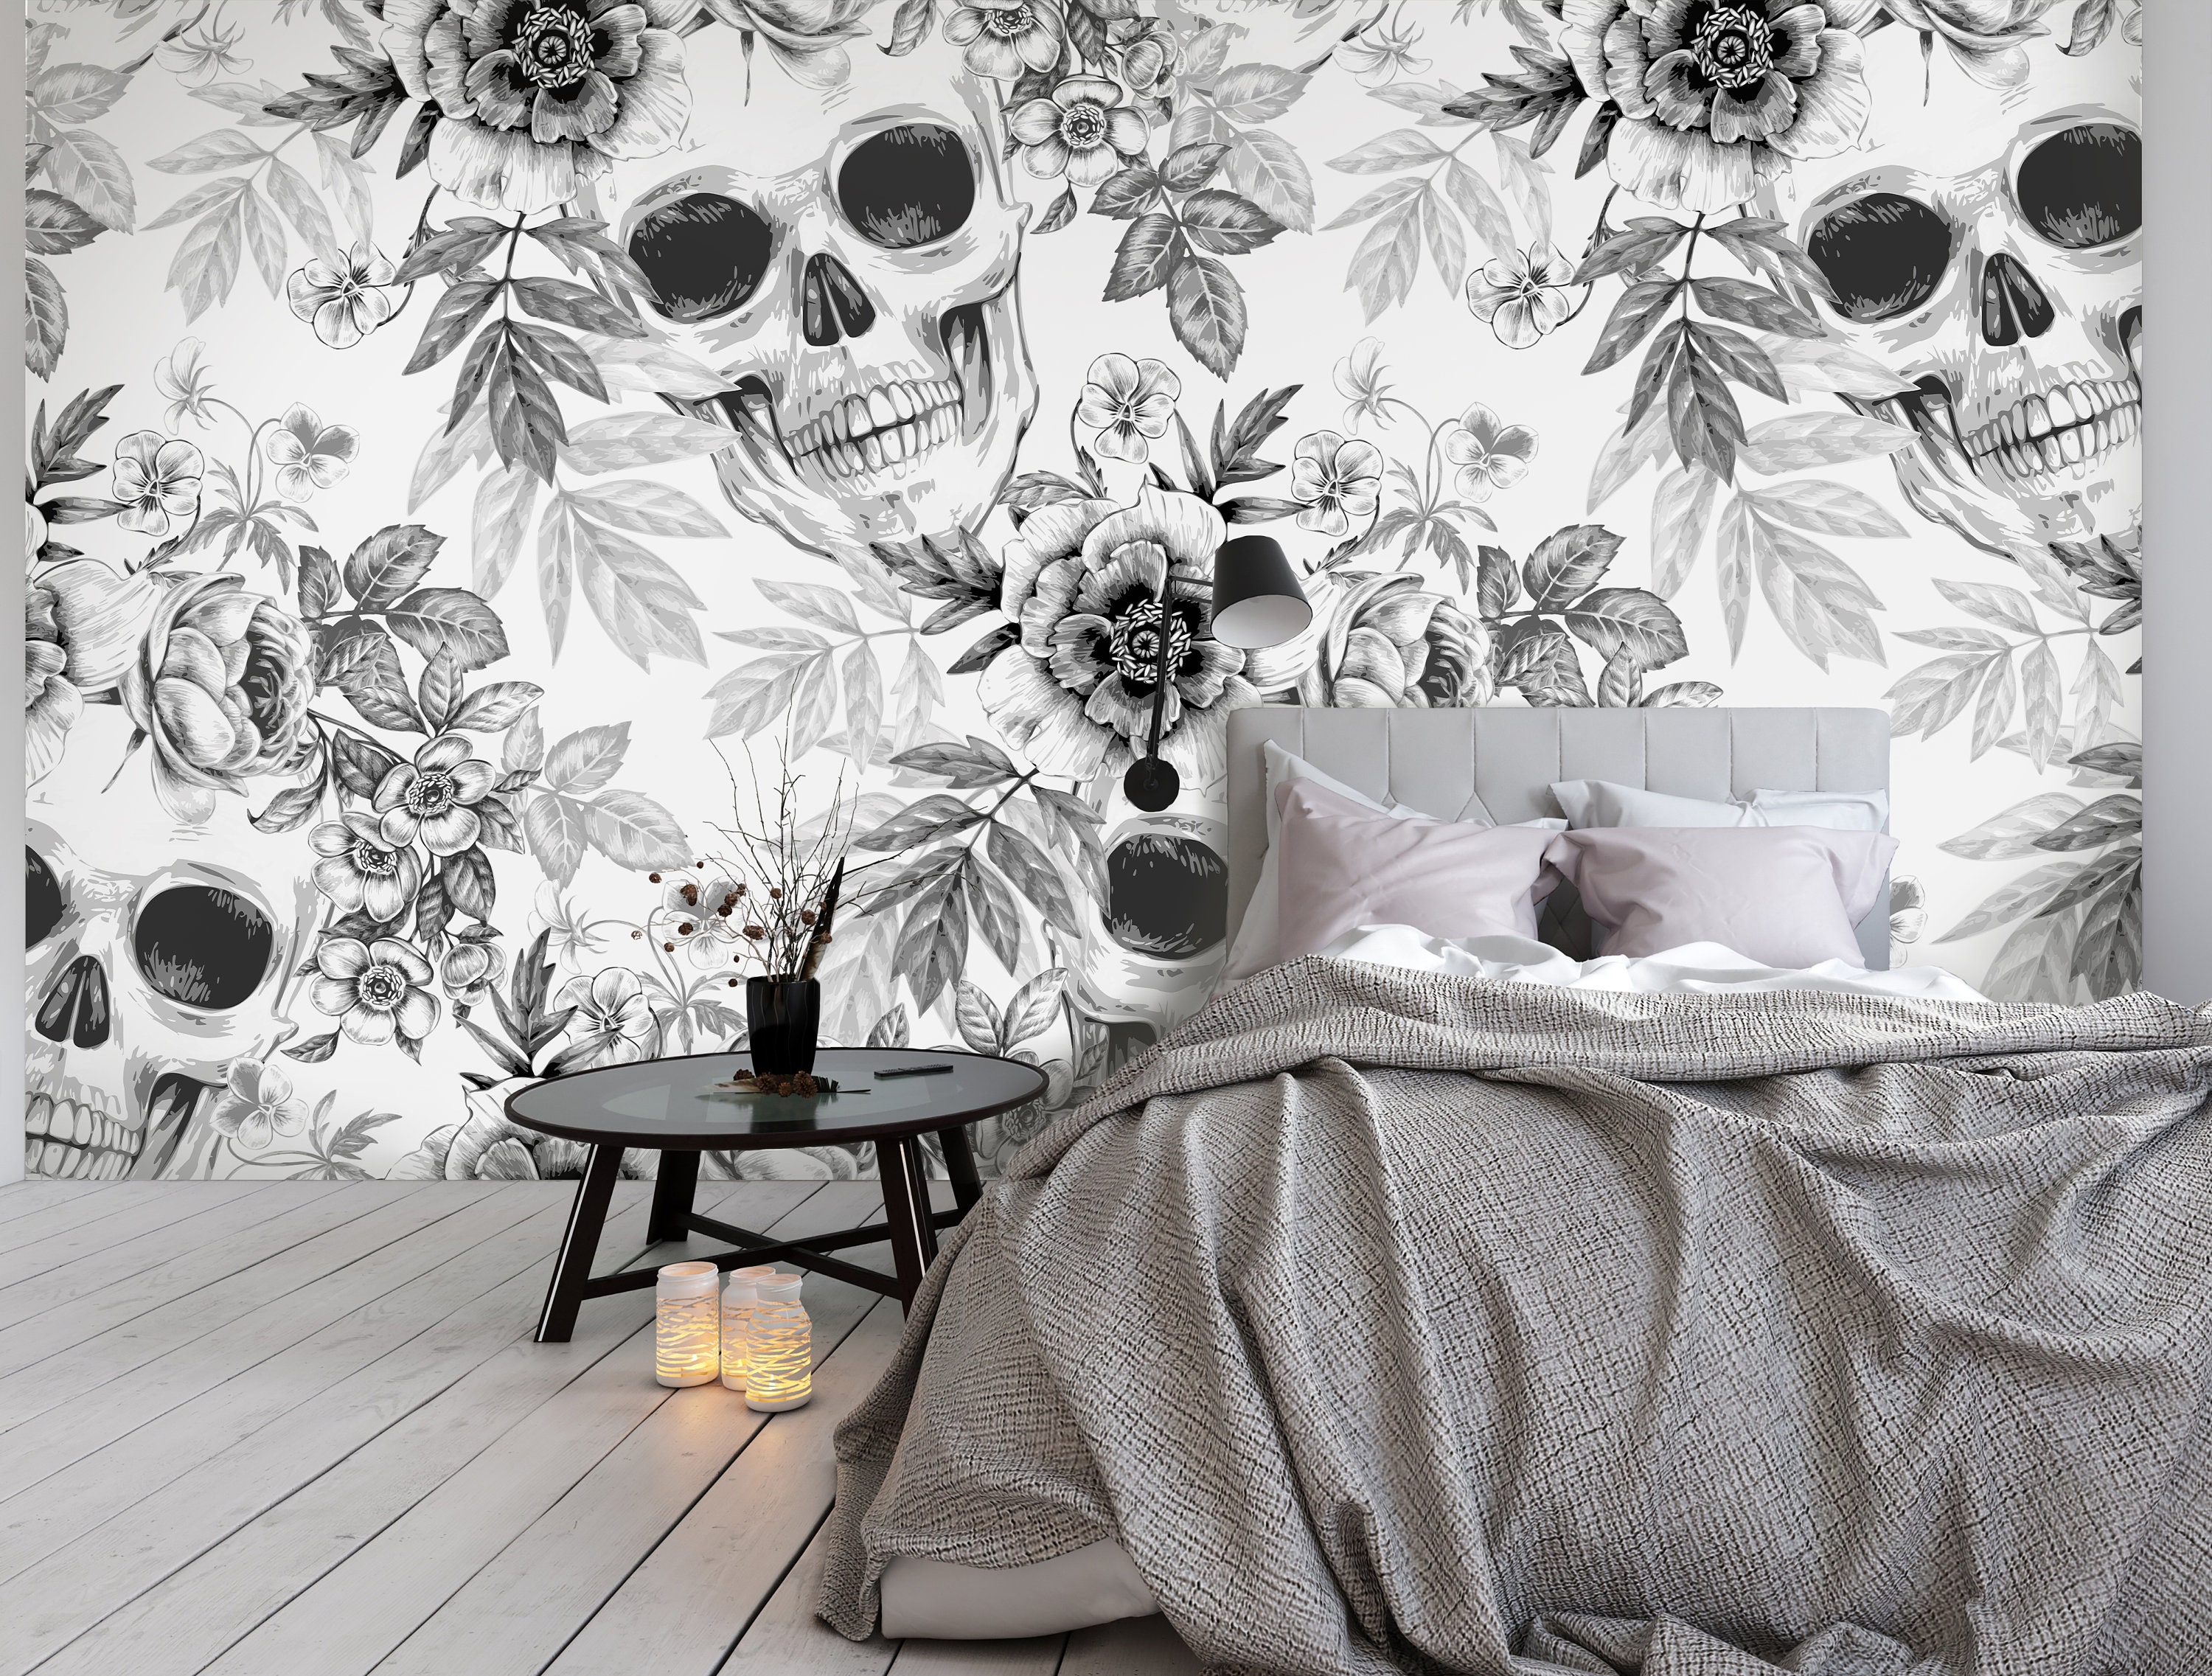 160 Skull Wallpaper ideas | skull, skull wallpaper, skull art